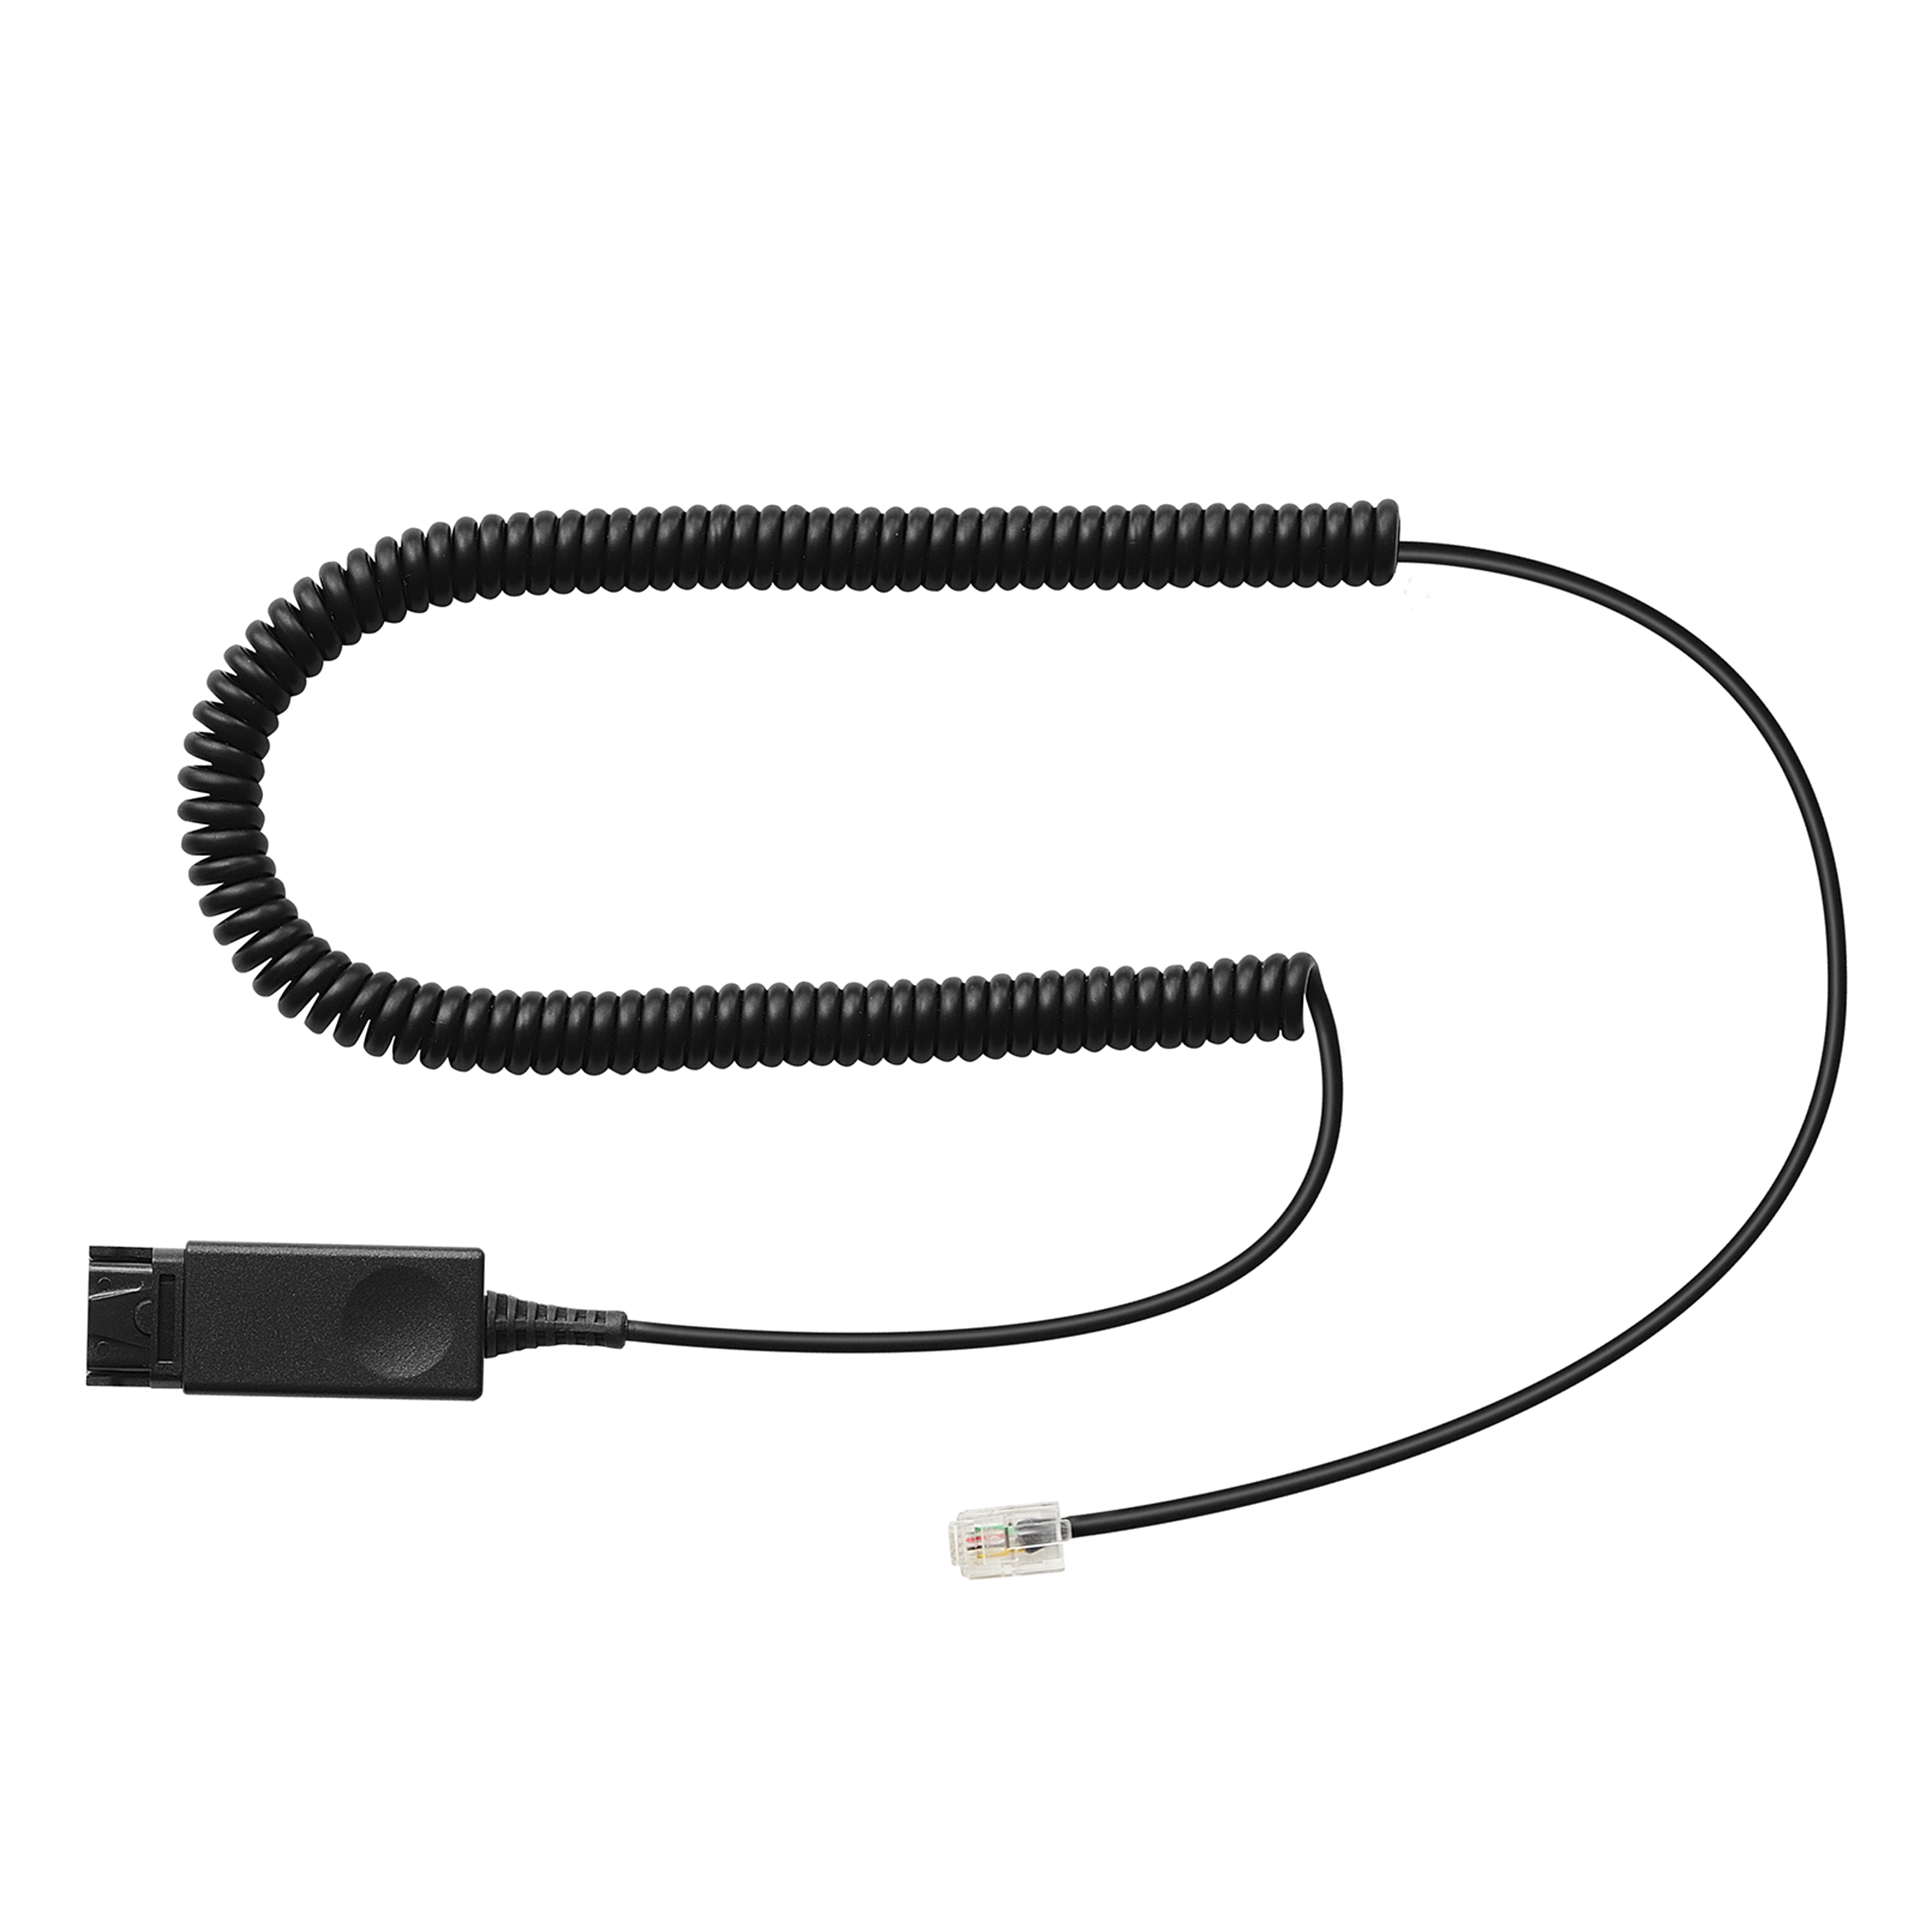 Addasound Anschlusskabel PLX-QD Kabel für AVAYA IP Phone HIS (Typen 1600, 9600),